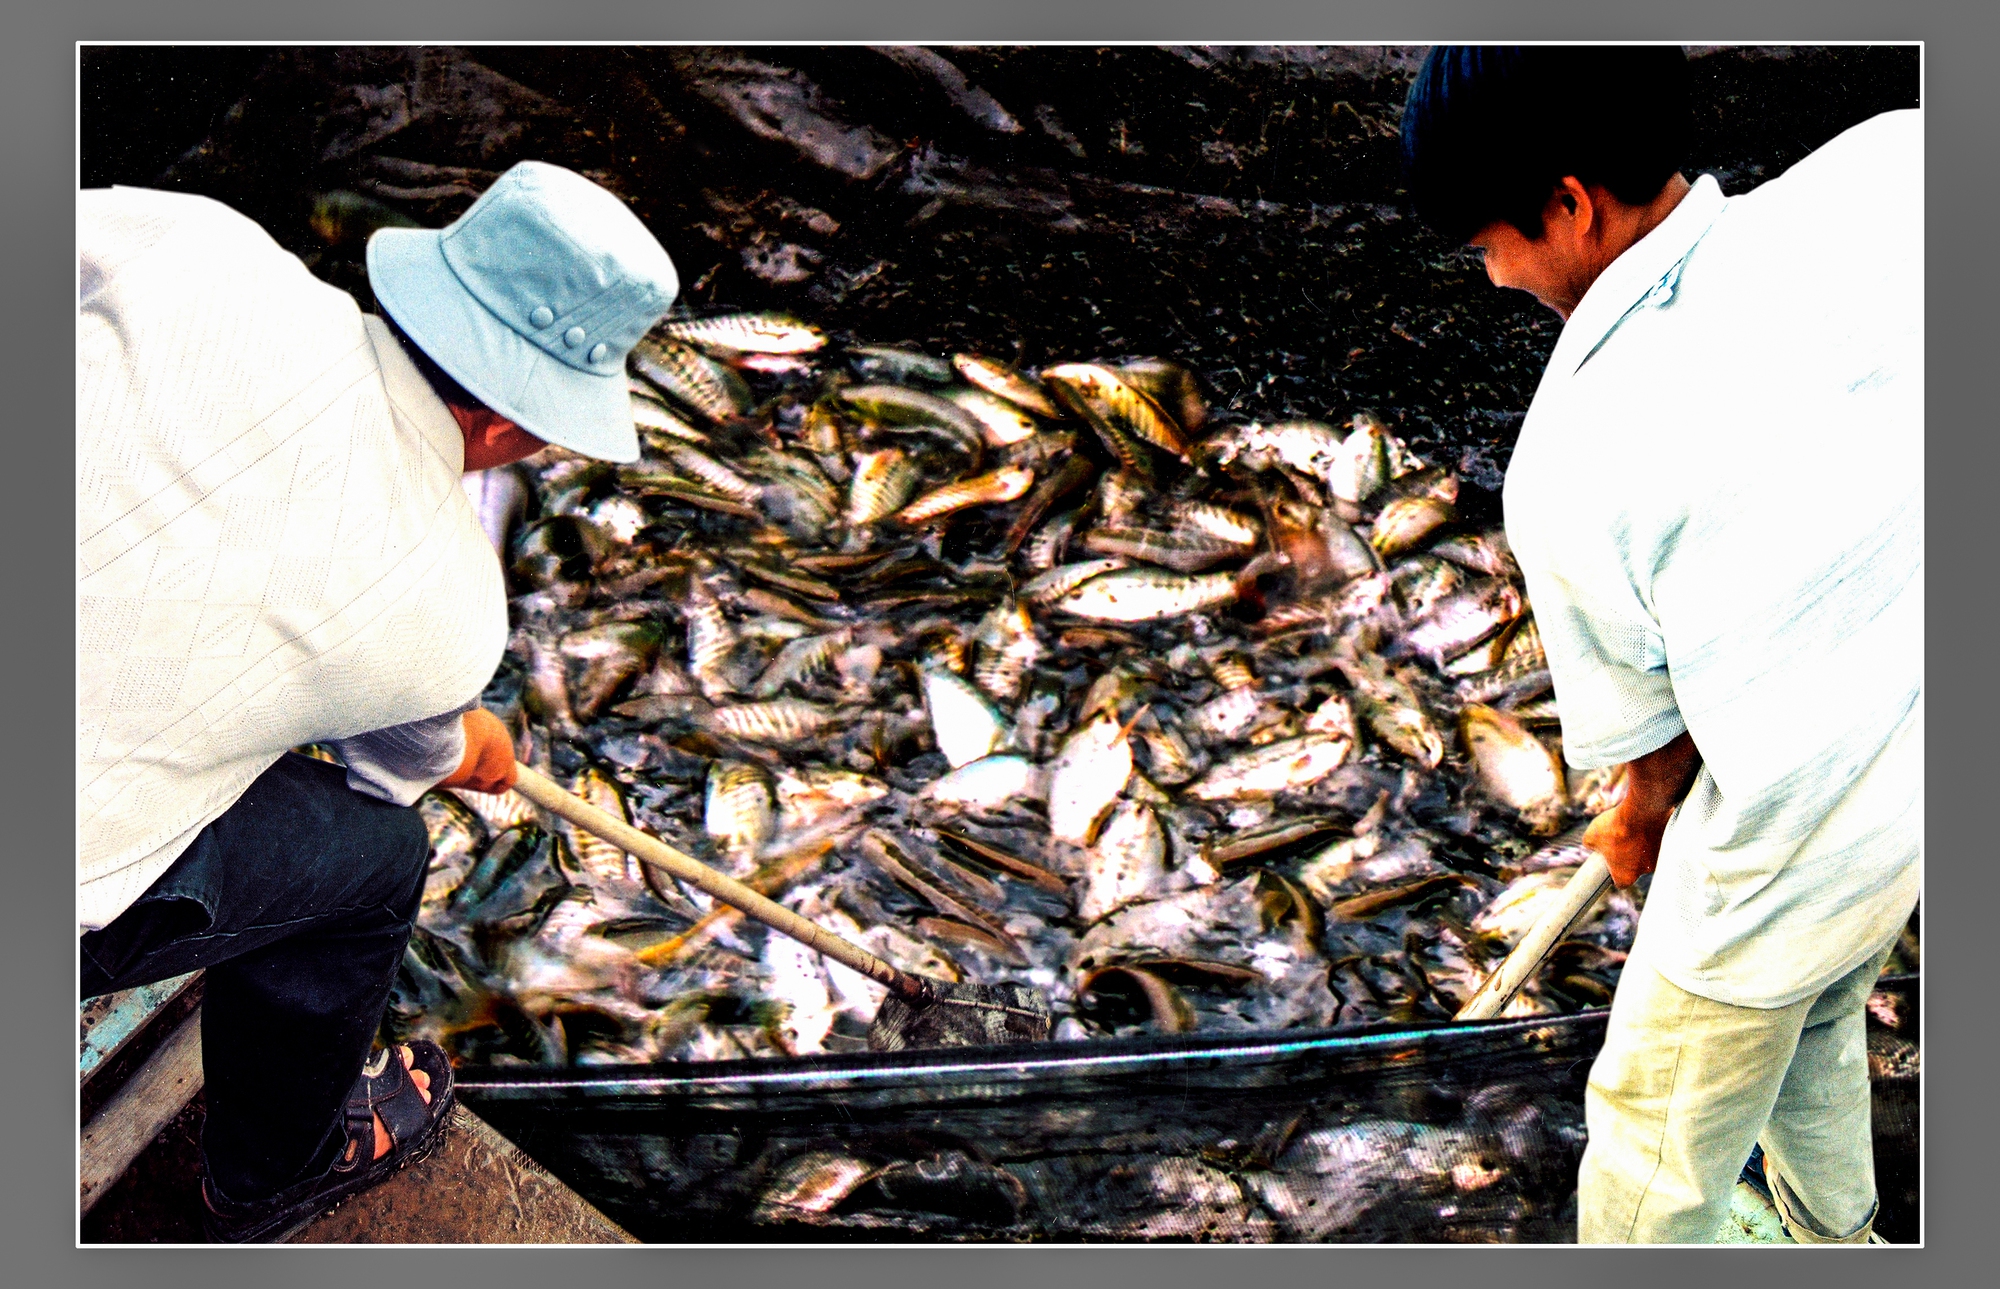 Cận cảnh loài cá đồng-cá đặc sản nổi tiếng bắt trong rừng ngập nước Cà Mau - Ảnh 4.